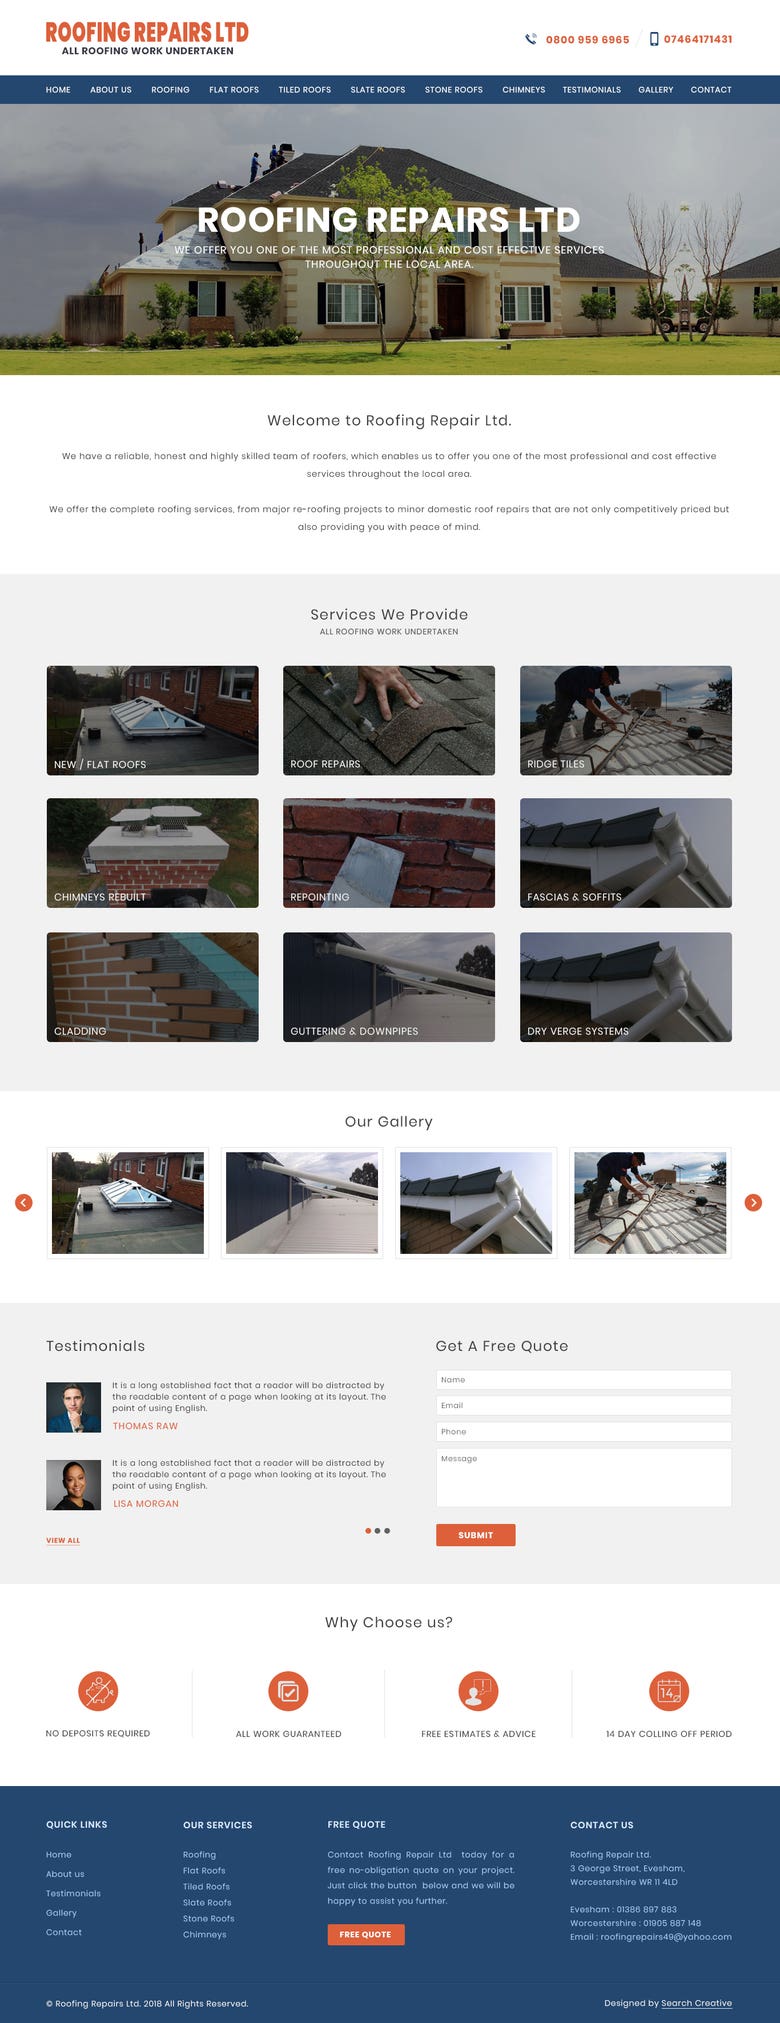 Roofing Repairs Ltd UK - http://roofingrepairsltd.co.uk/